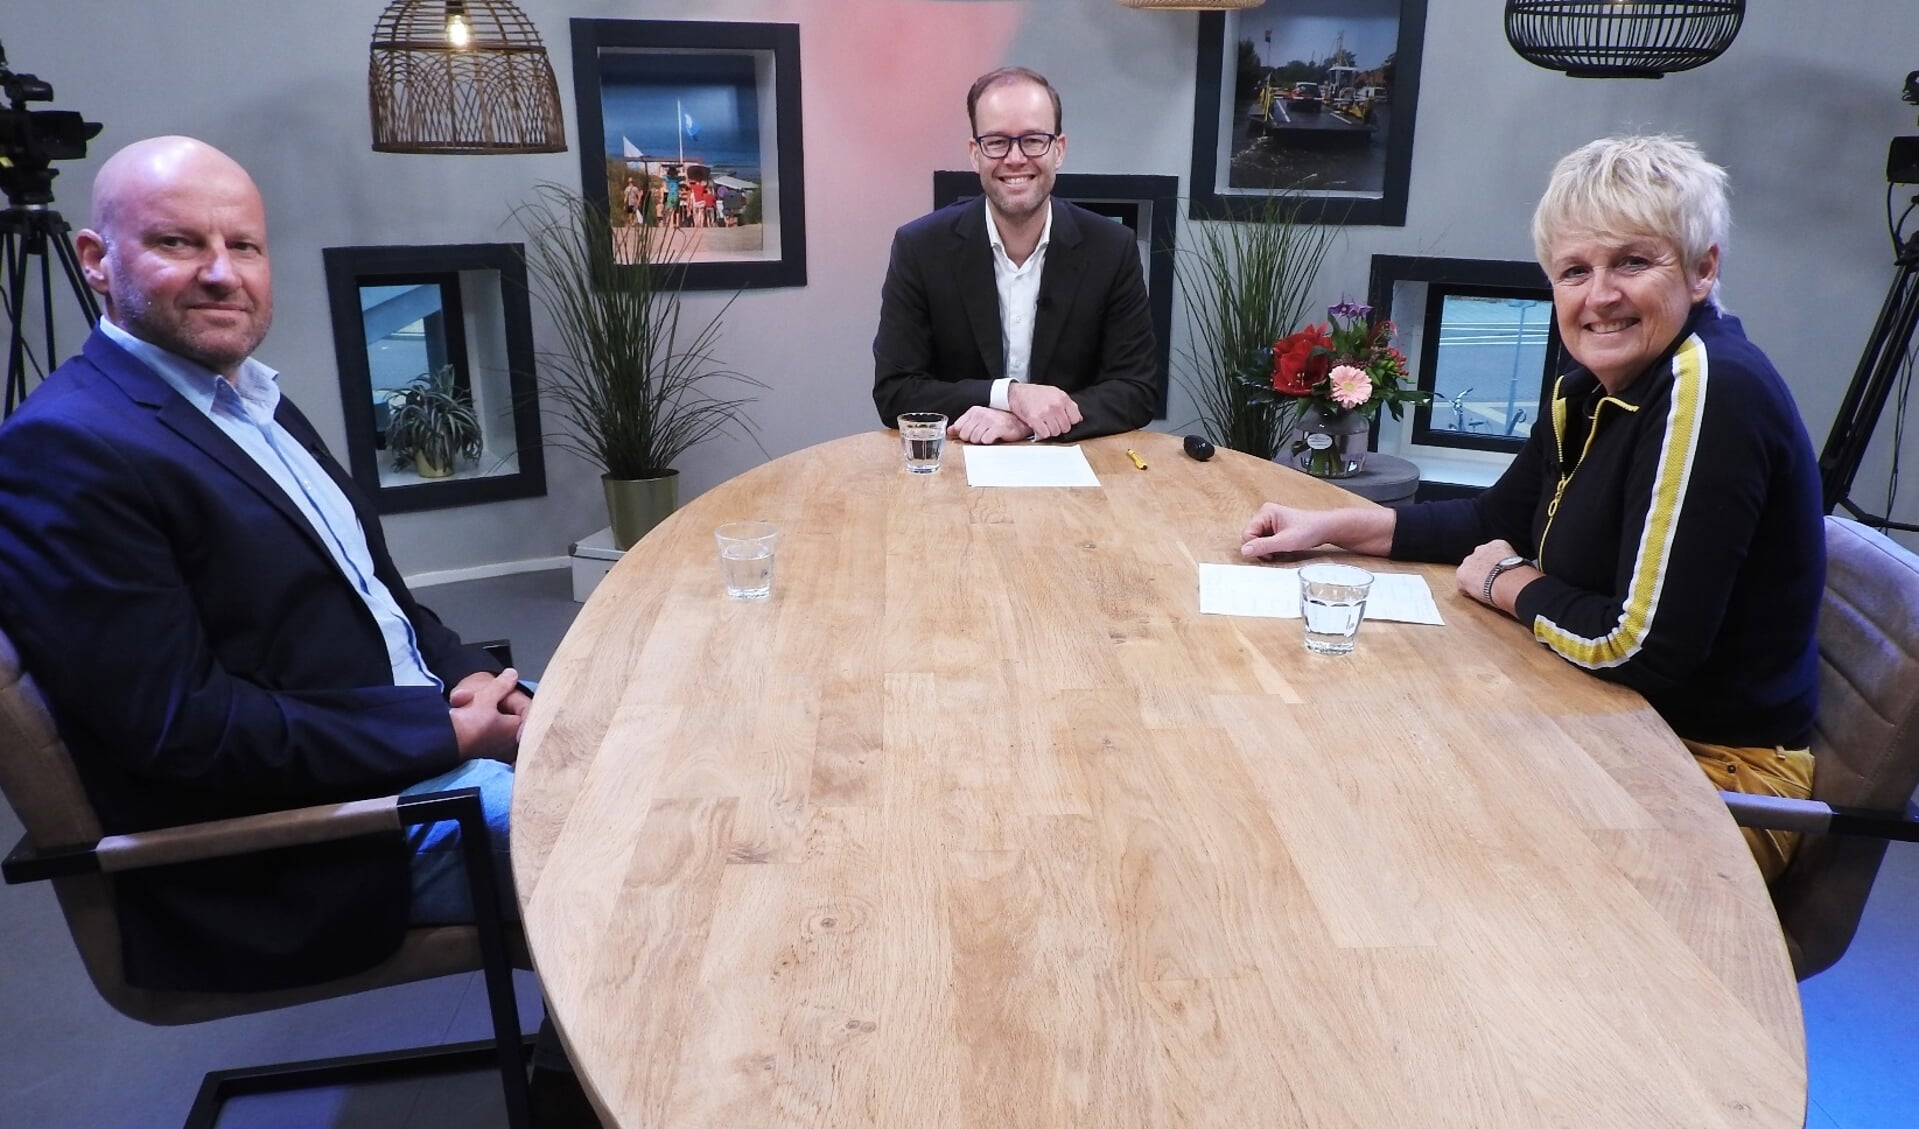 Klimaatburgemeester Frank Drost (links) aan tafel bij Sander Verschoor van Omroep Castricum.